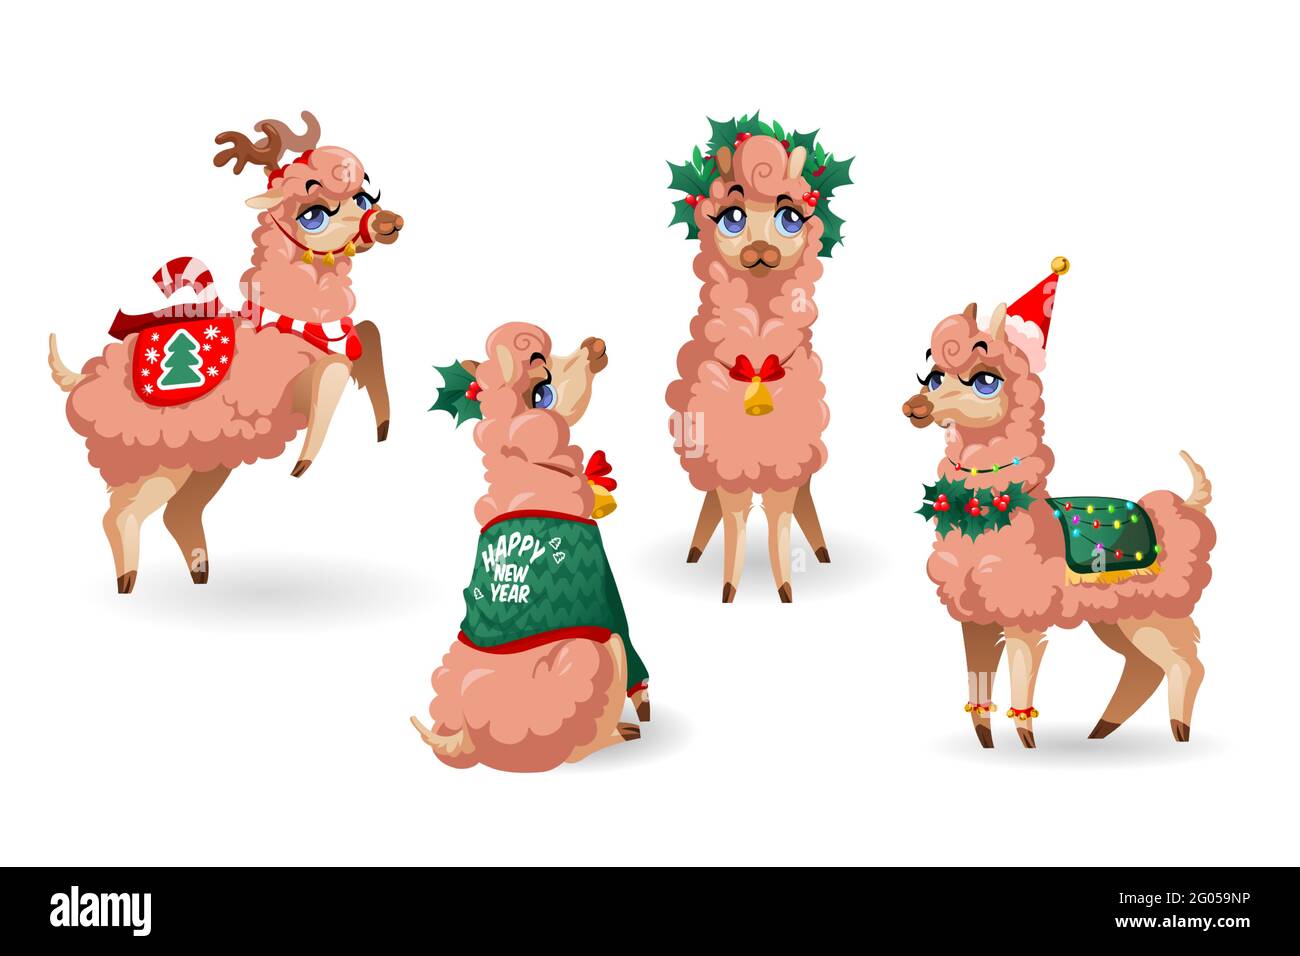 Lindo personaje de llama con decoración de Año Nuevo aislada sobre fondo blanco. Juego de dibujos animados vectoriales de alpaca adorable con hojas de acebo, cuernos de reno y sombrero rojo de Santa. Vicuna con guirnalda de Navidad Ilustración del Vector